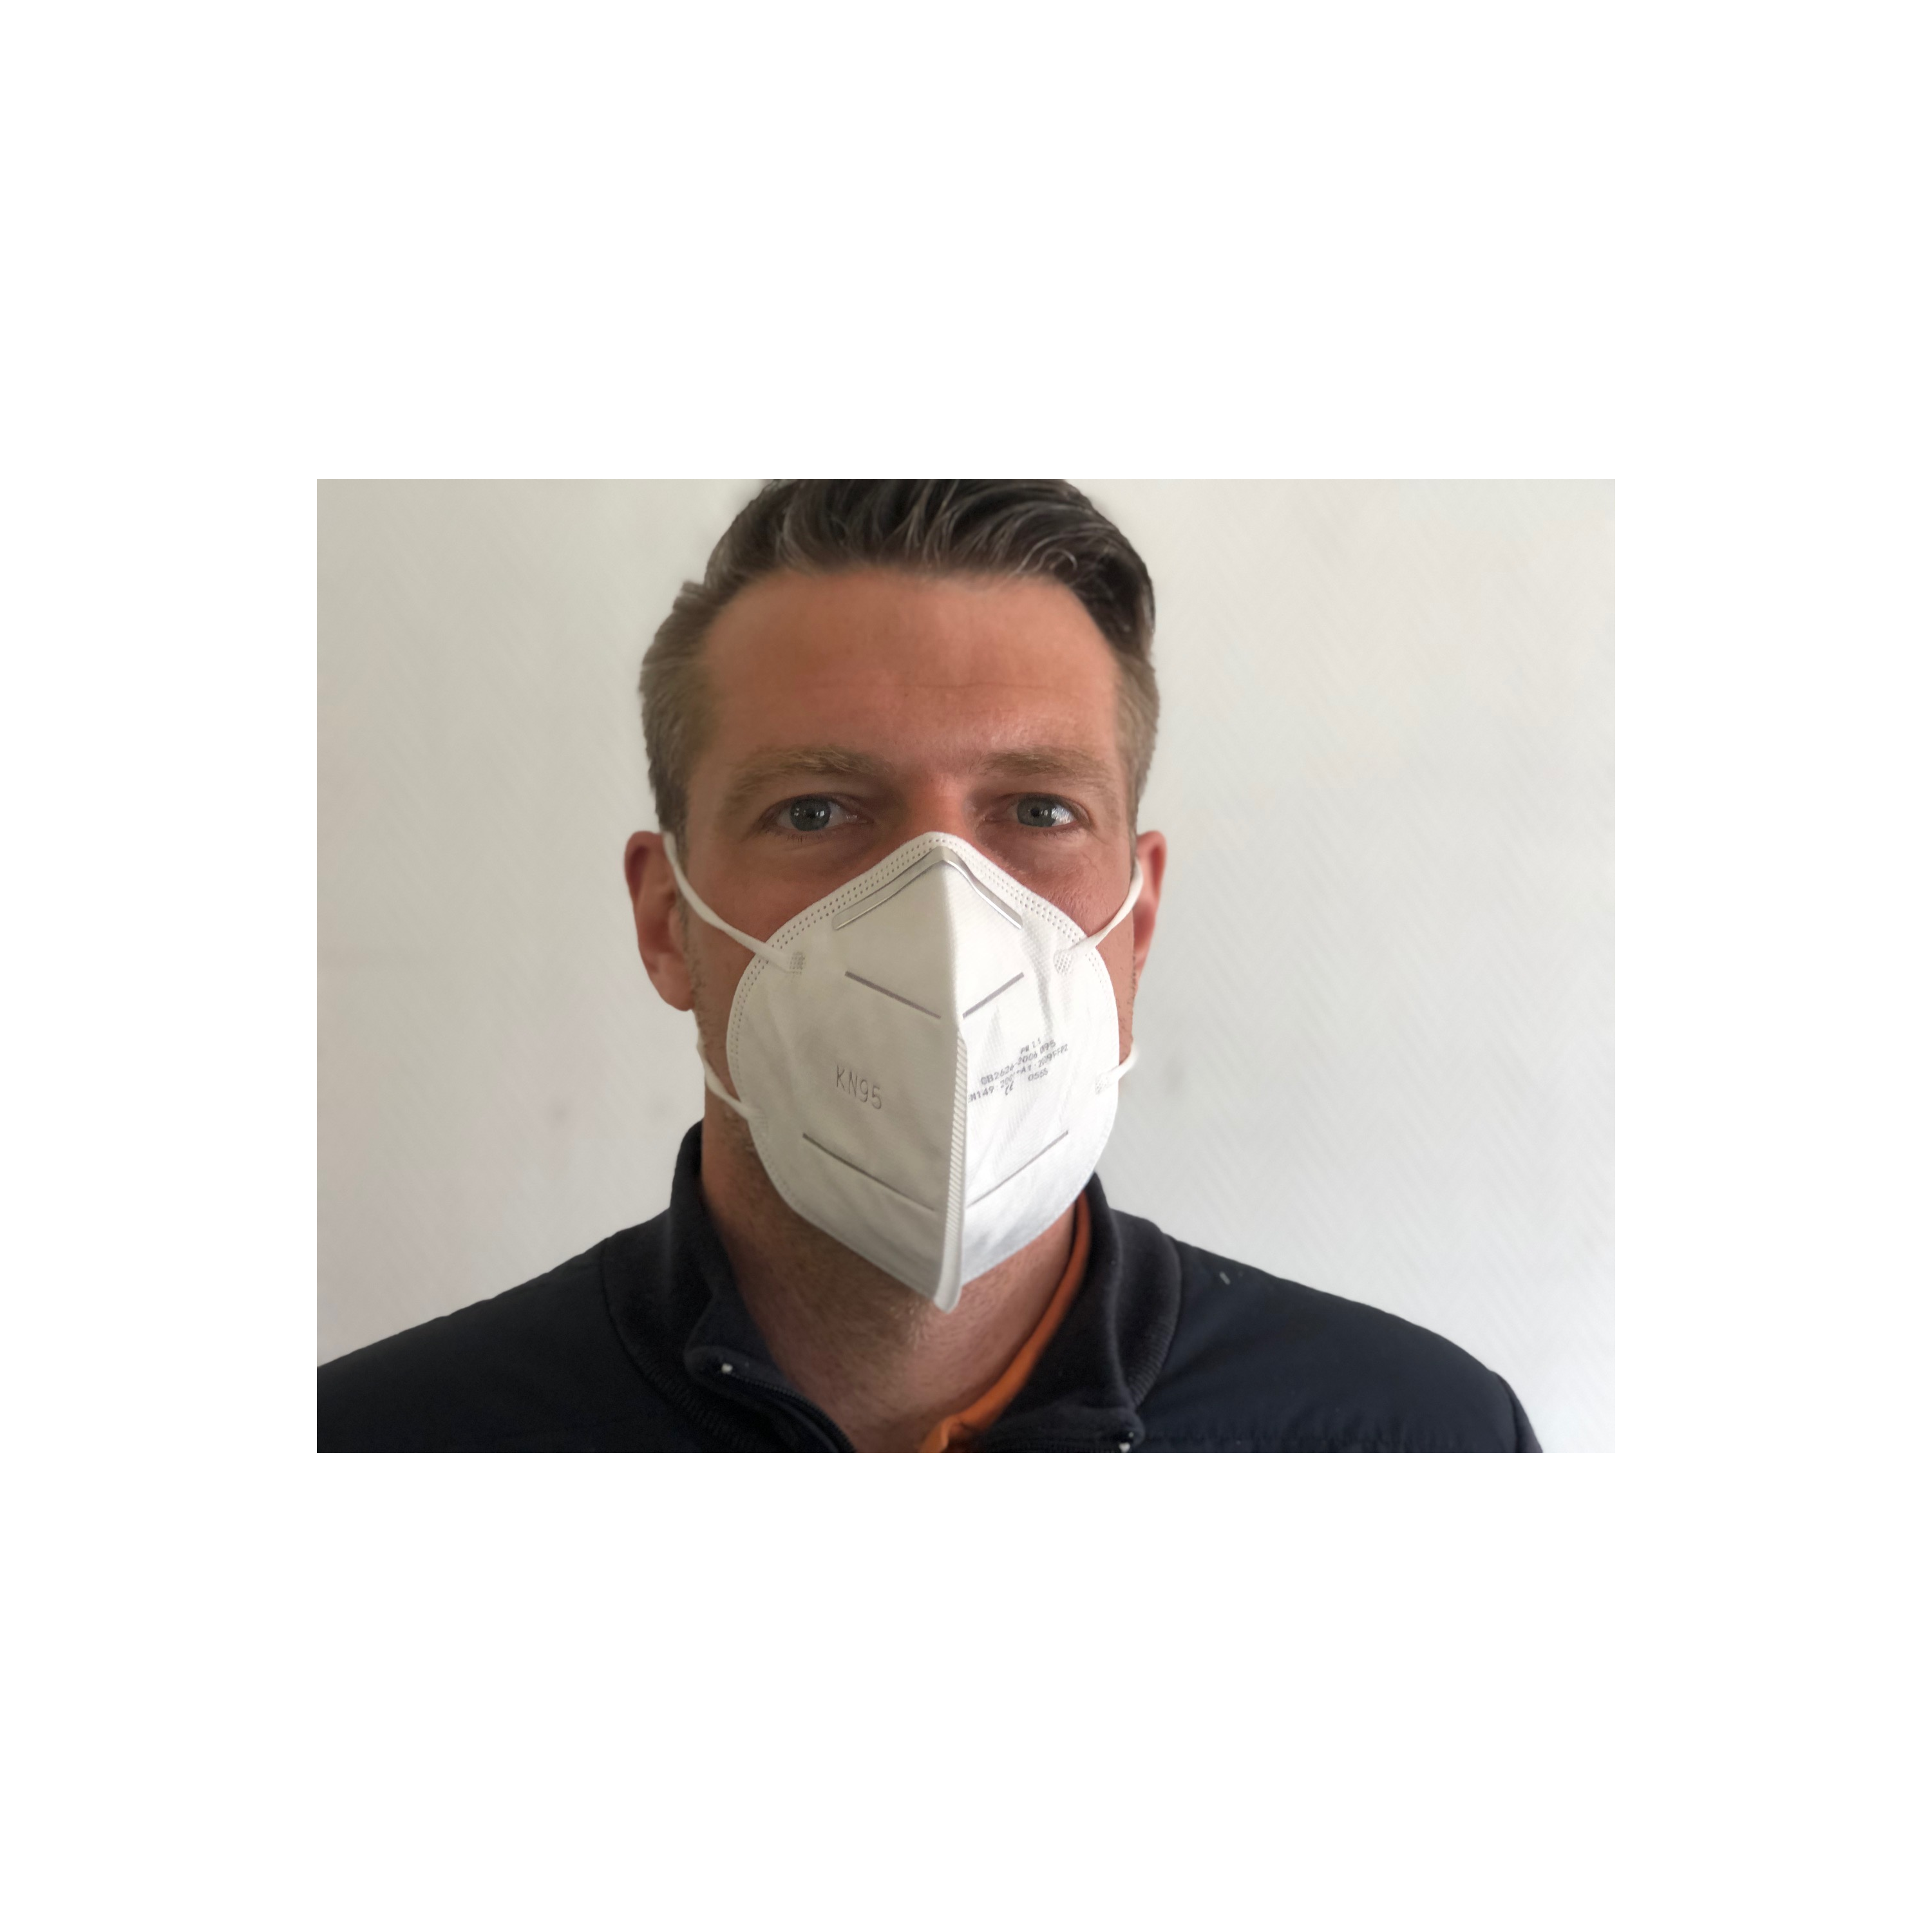 Masque FFP2 : pharmacie, normes, acheter, réutilisable ?